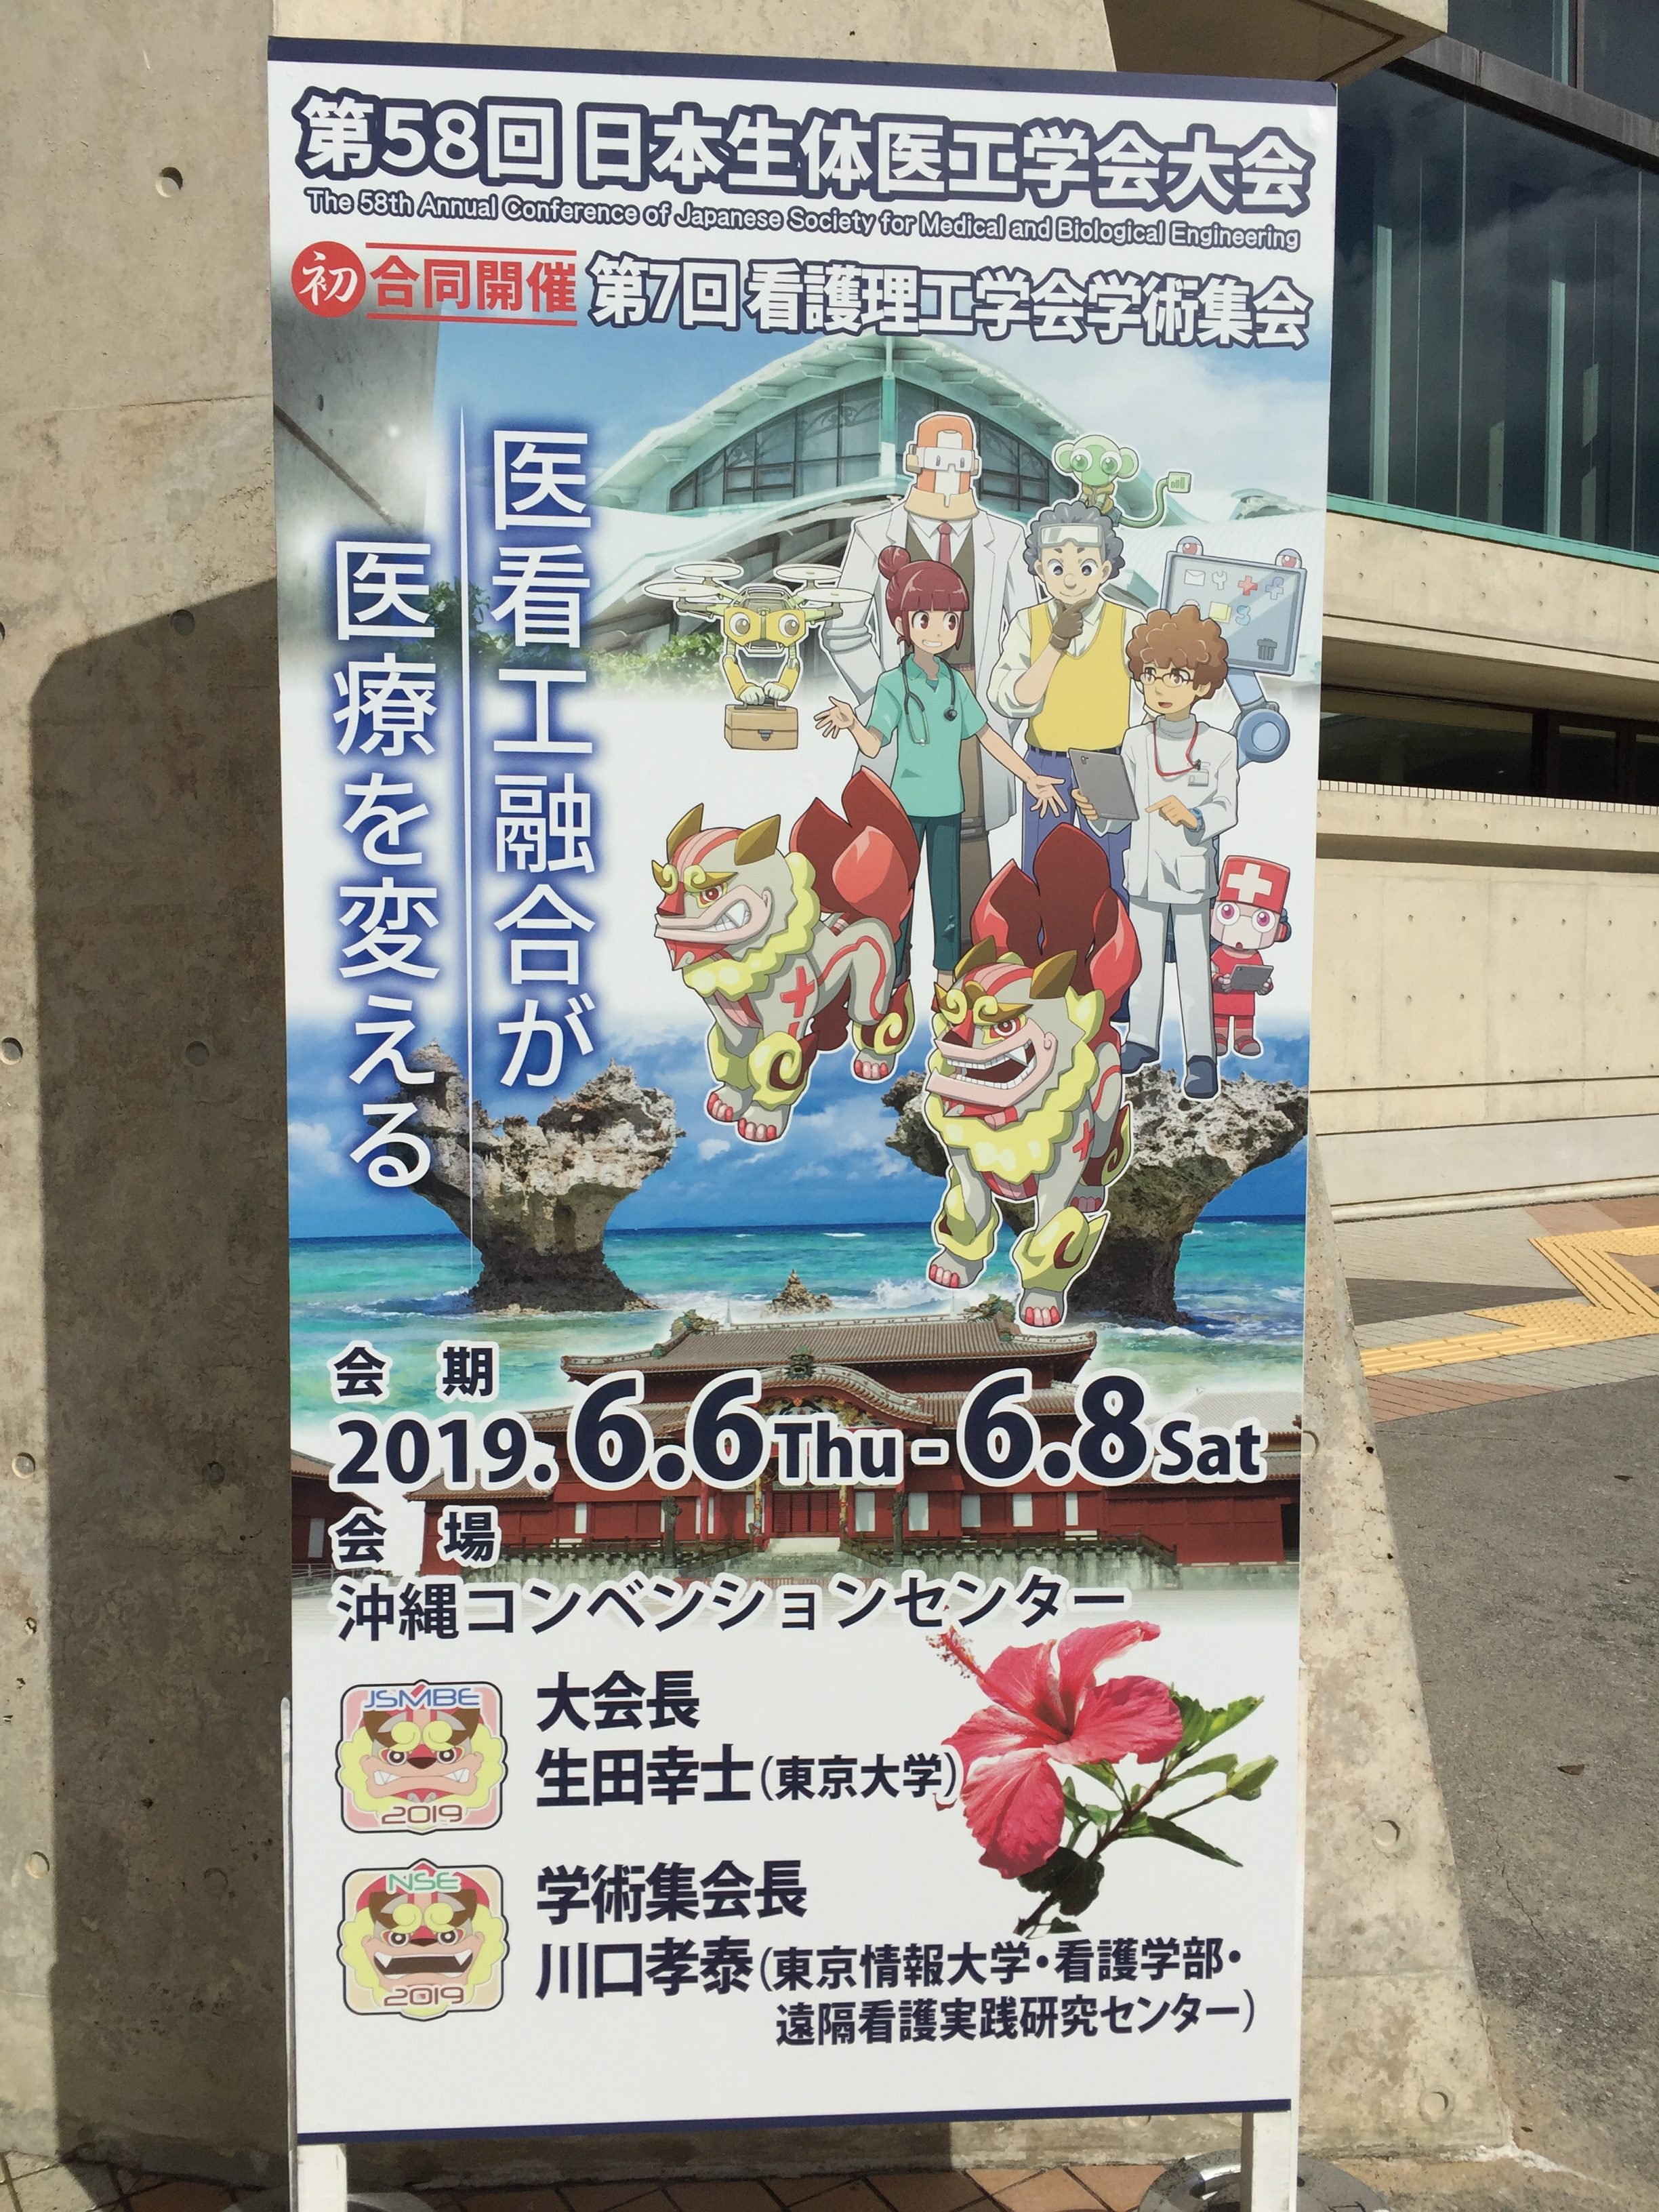 修士1年の藤野君が第58回日本生体医工学会(@沖縄)でポスター発表しました．